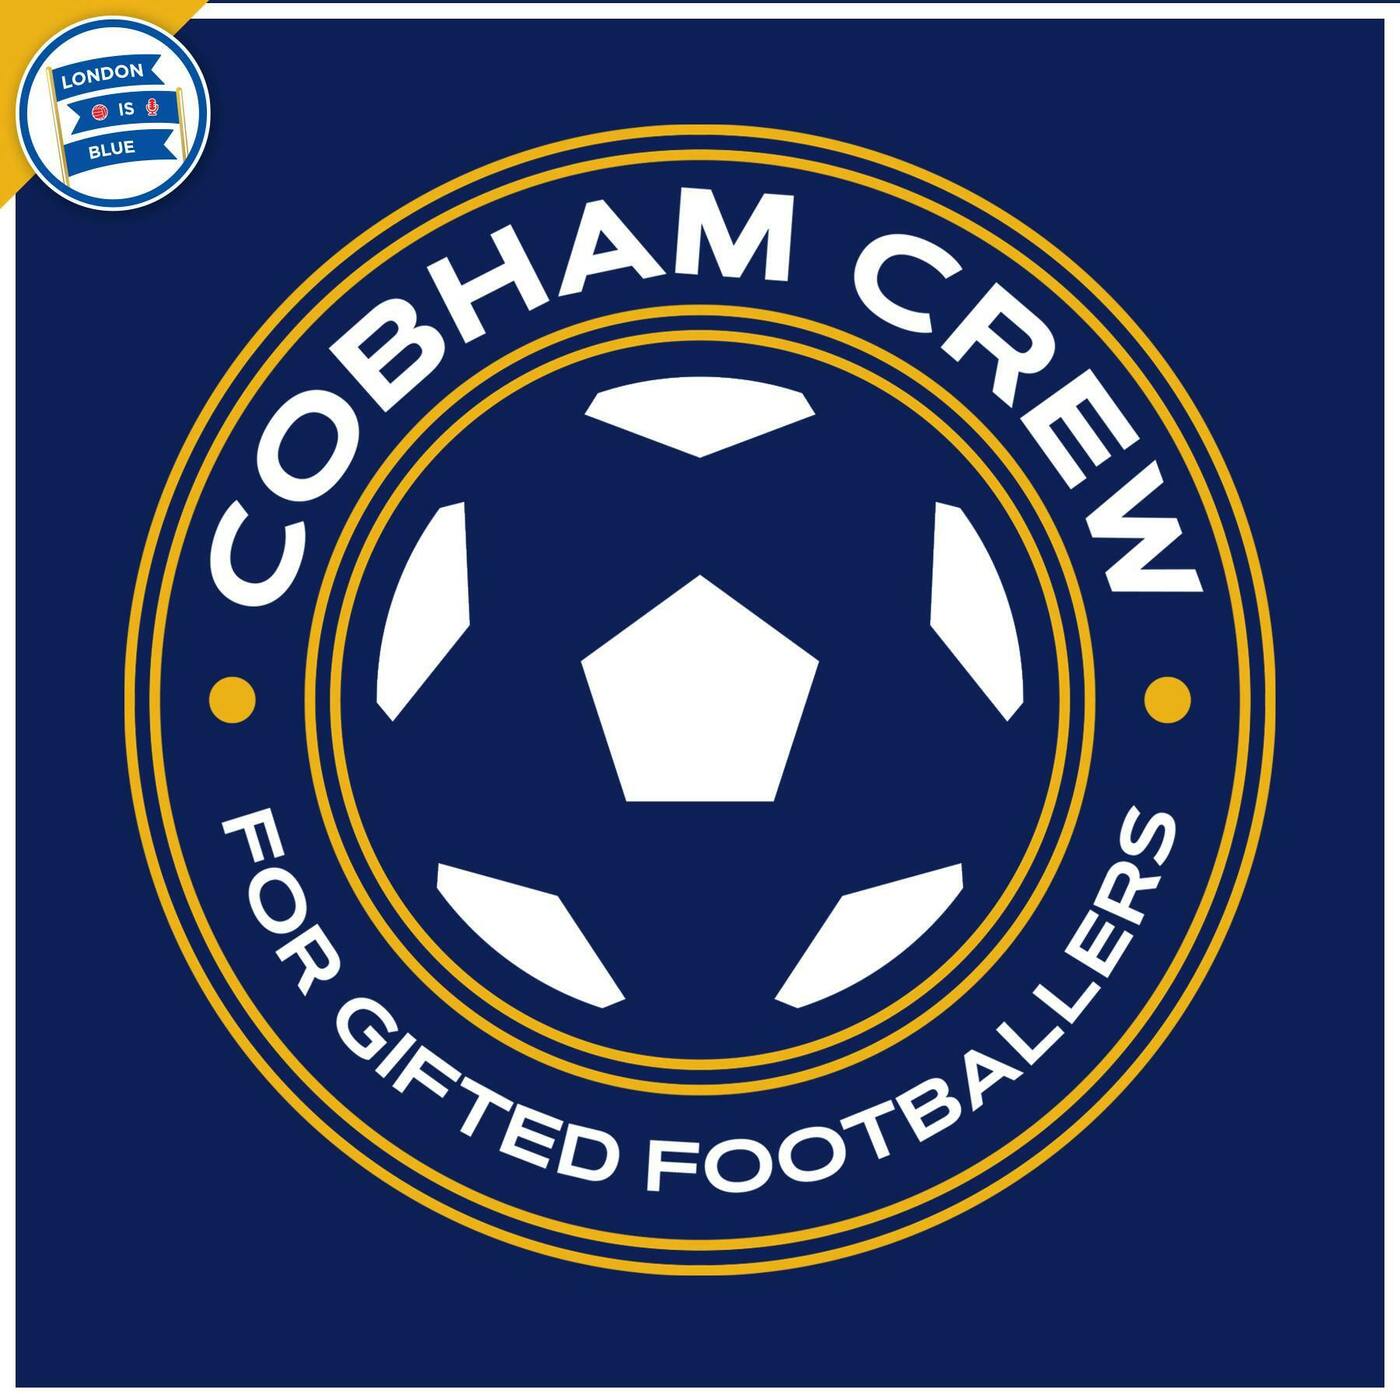 #896 | Cobham Crew October 22' Update! #CFC